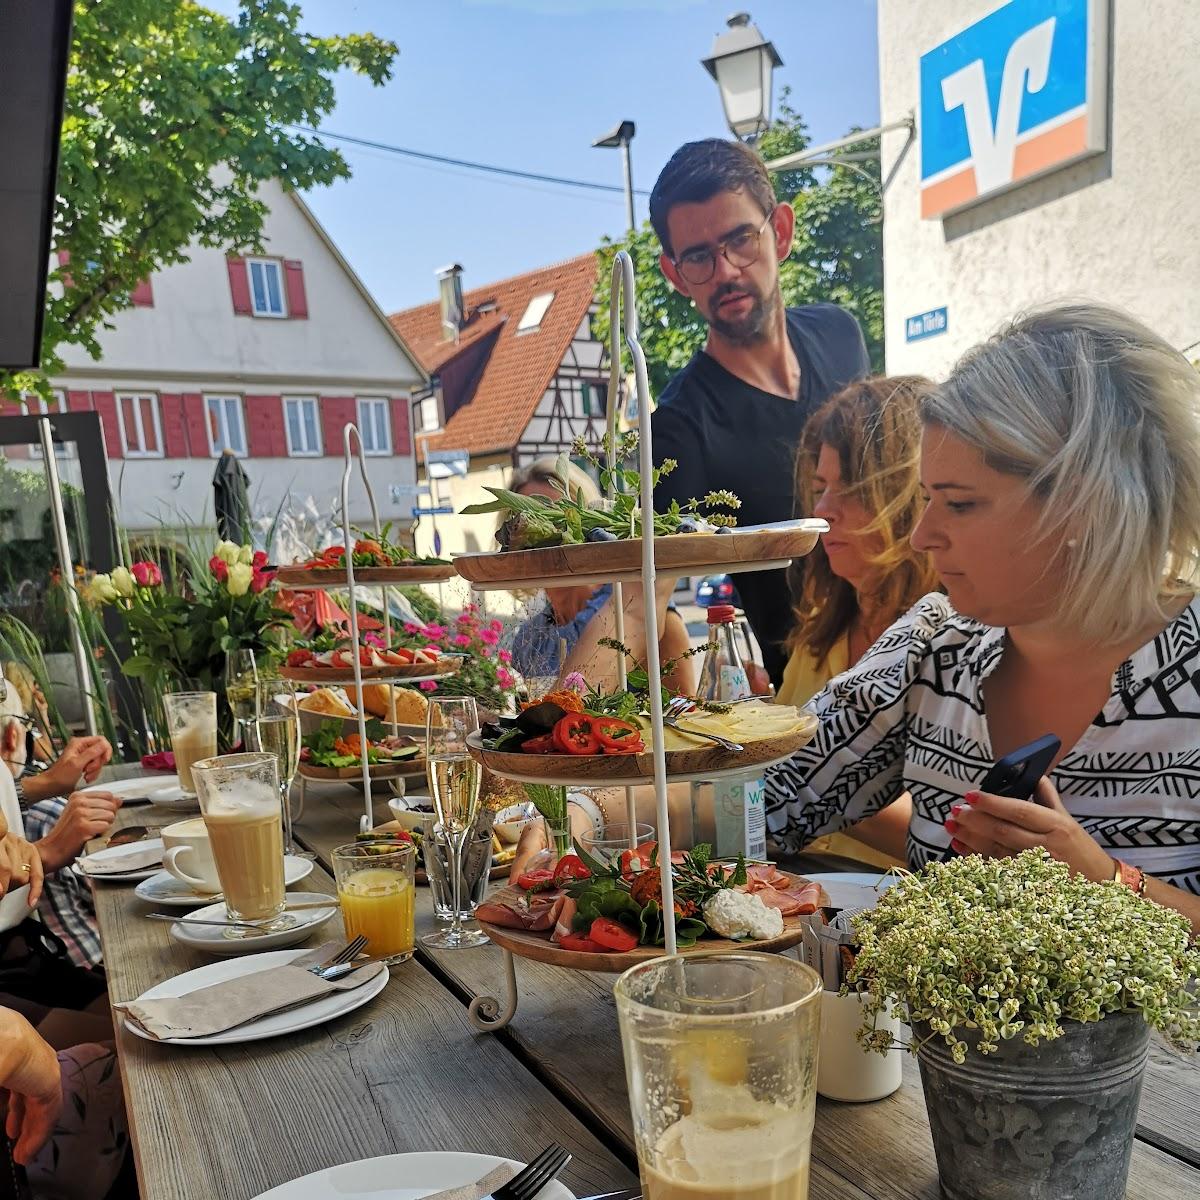 Restaurant "Cafe Mehrwert" in Weilheim an der Teck